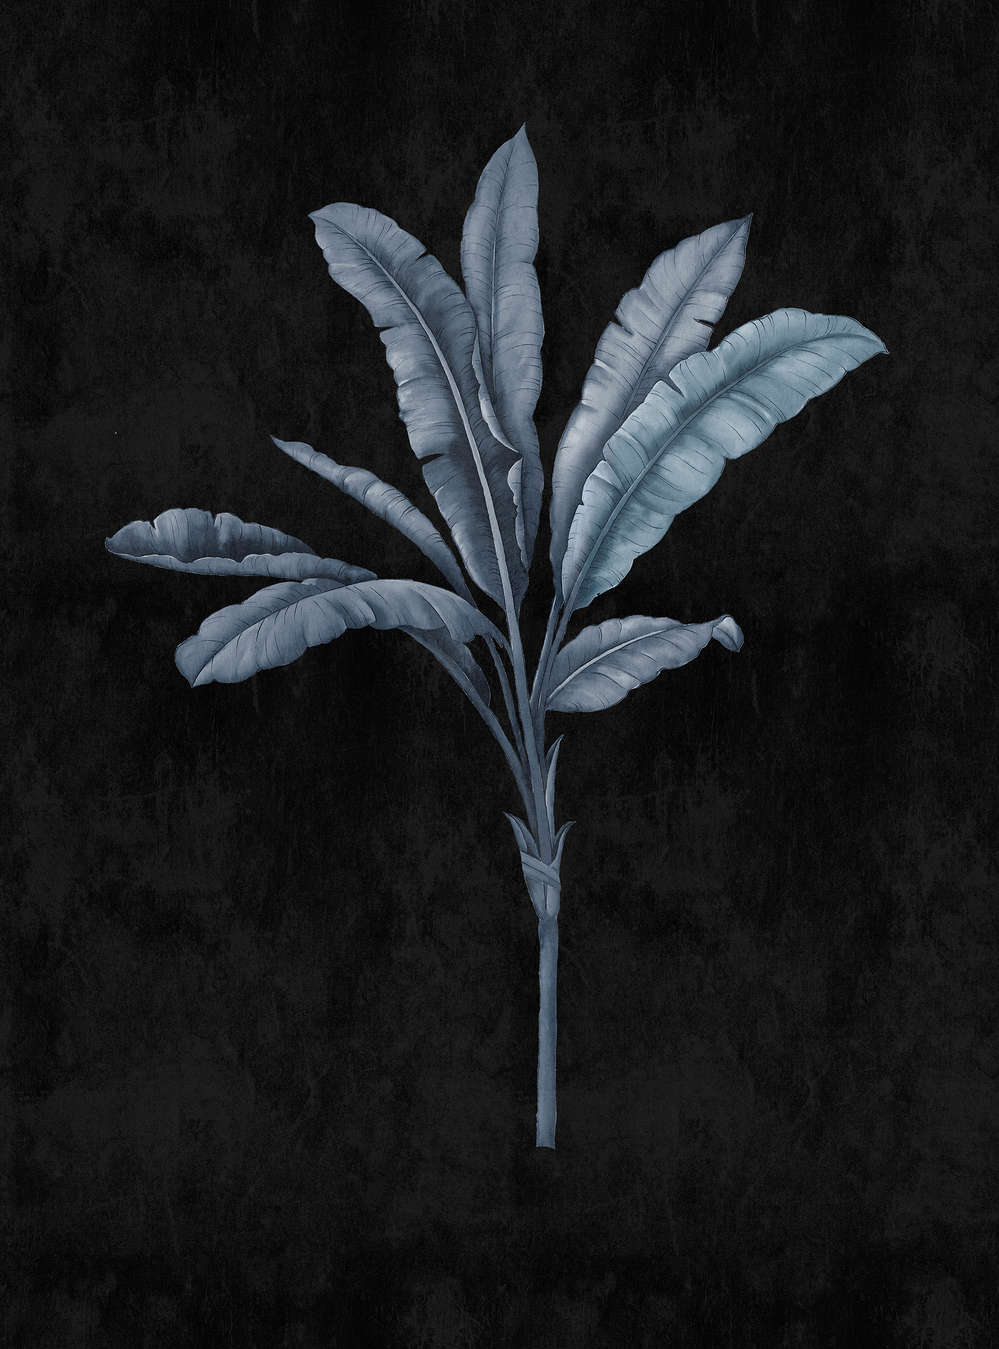             Fiji 2 - Muurschildering zwart met blauwgrijs palmboommotief
        